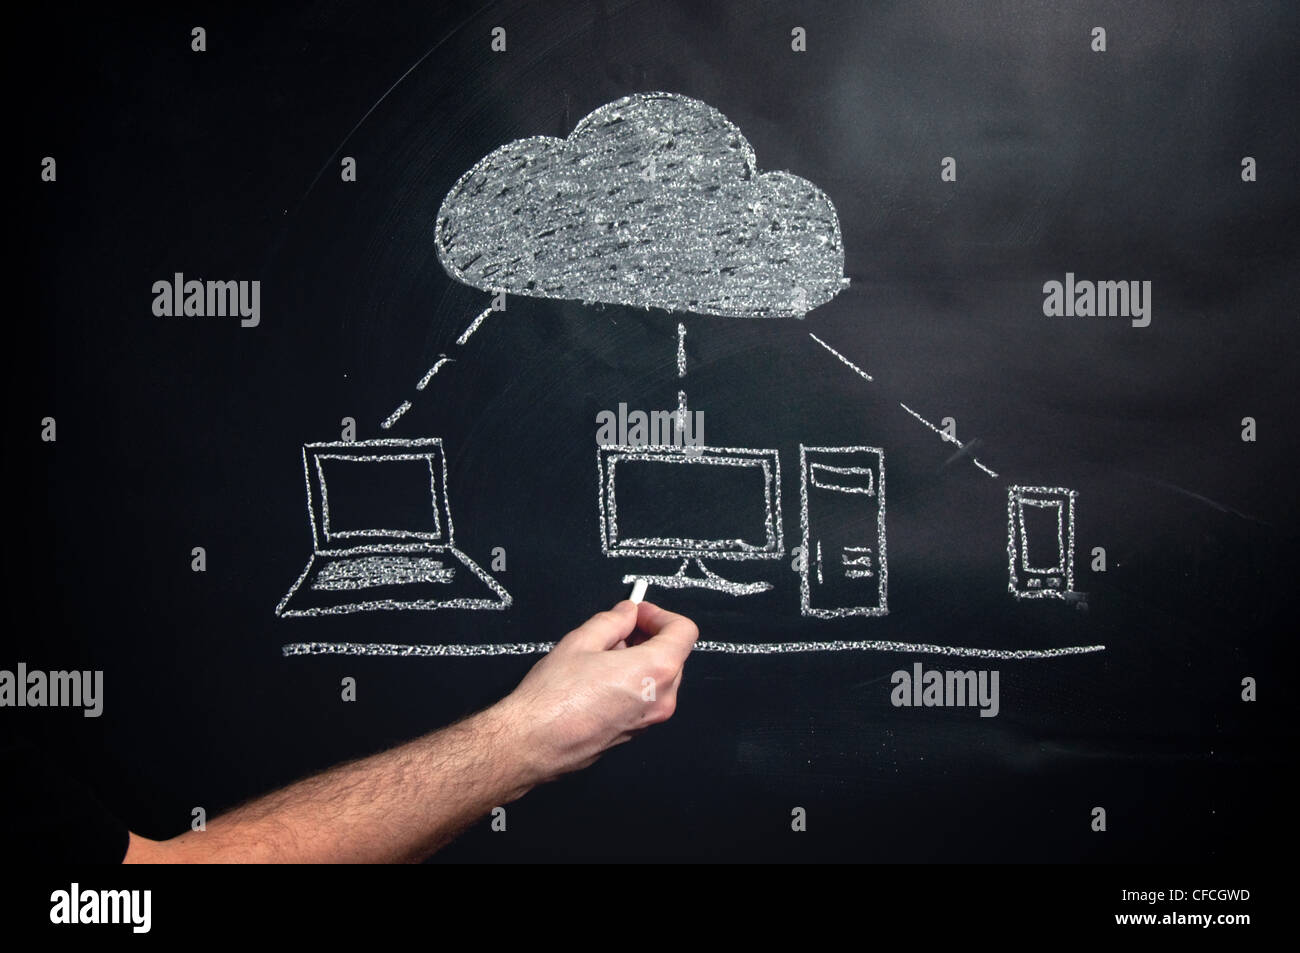 Cloud computing esquema gráfico dibujado con tiza en una pizarra. Foto de stock